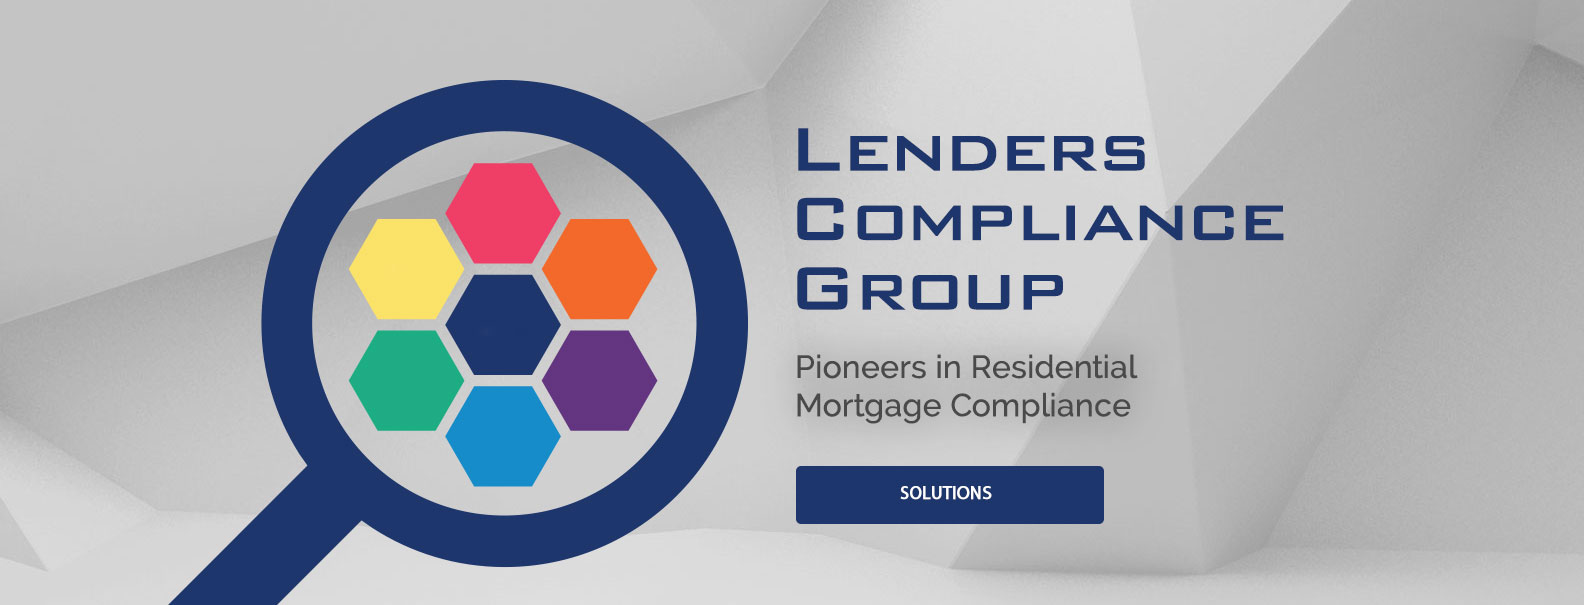 lenderscompliancegroup banner